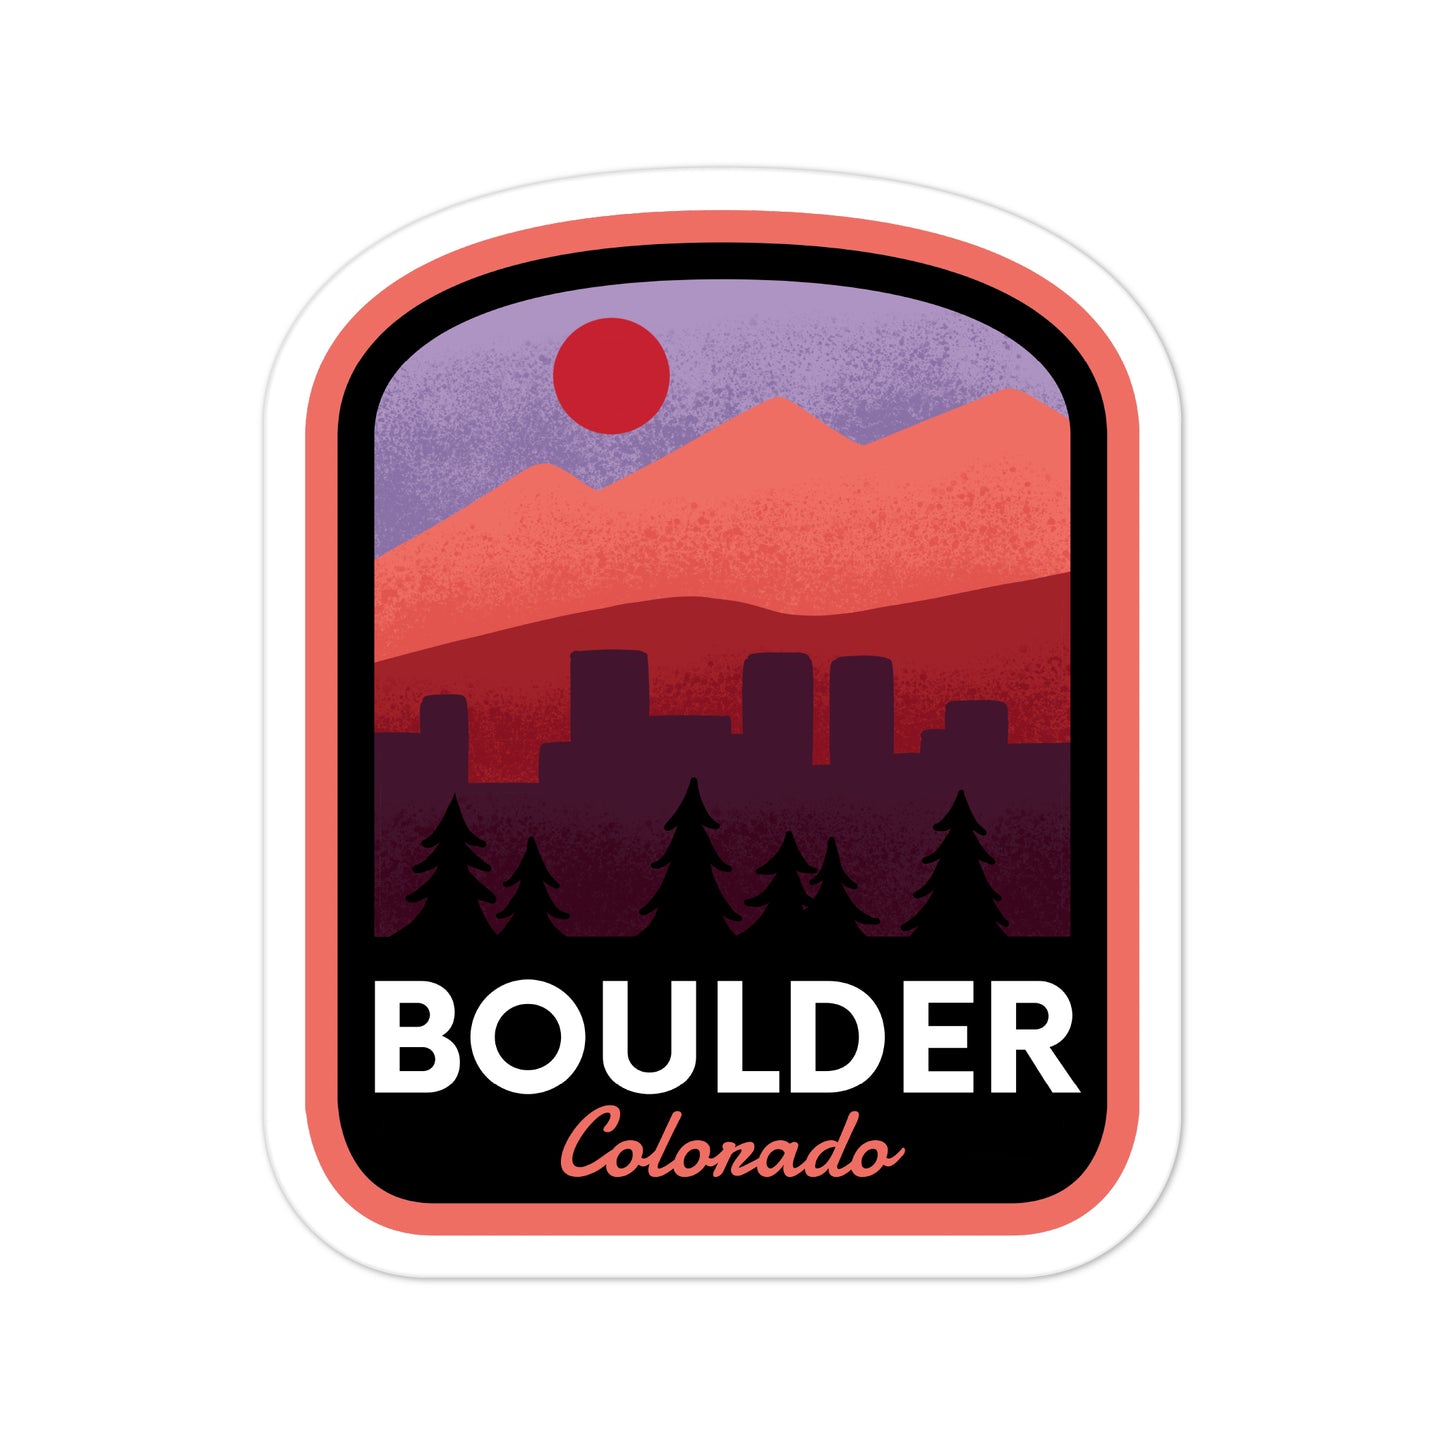 A sticker of Boulder Colorado